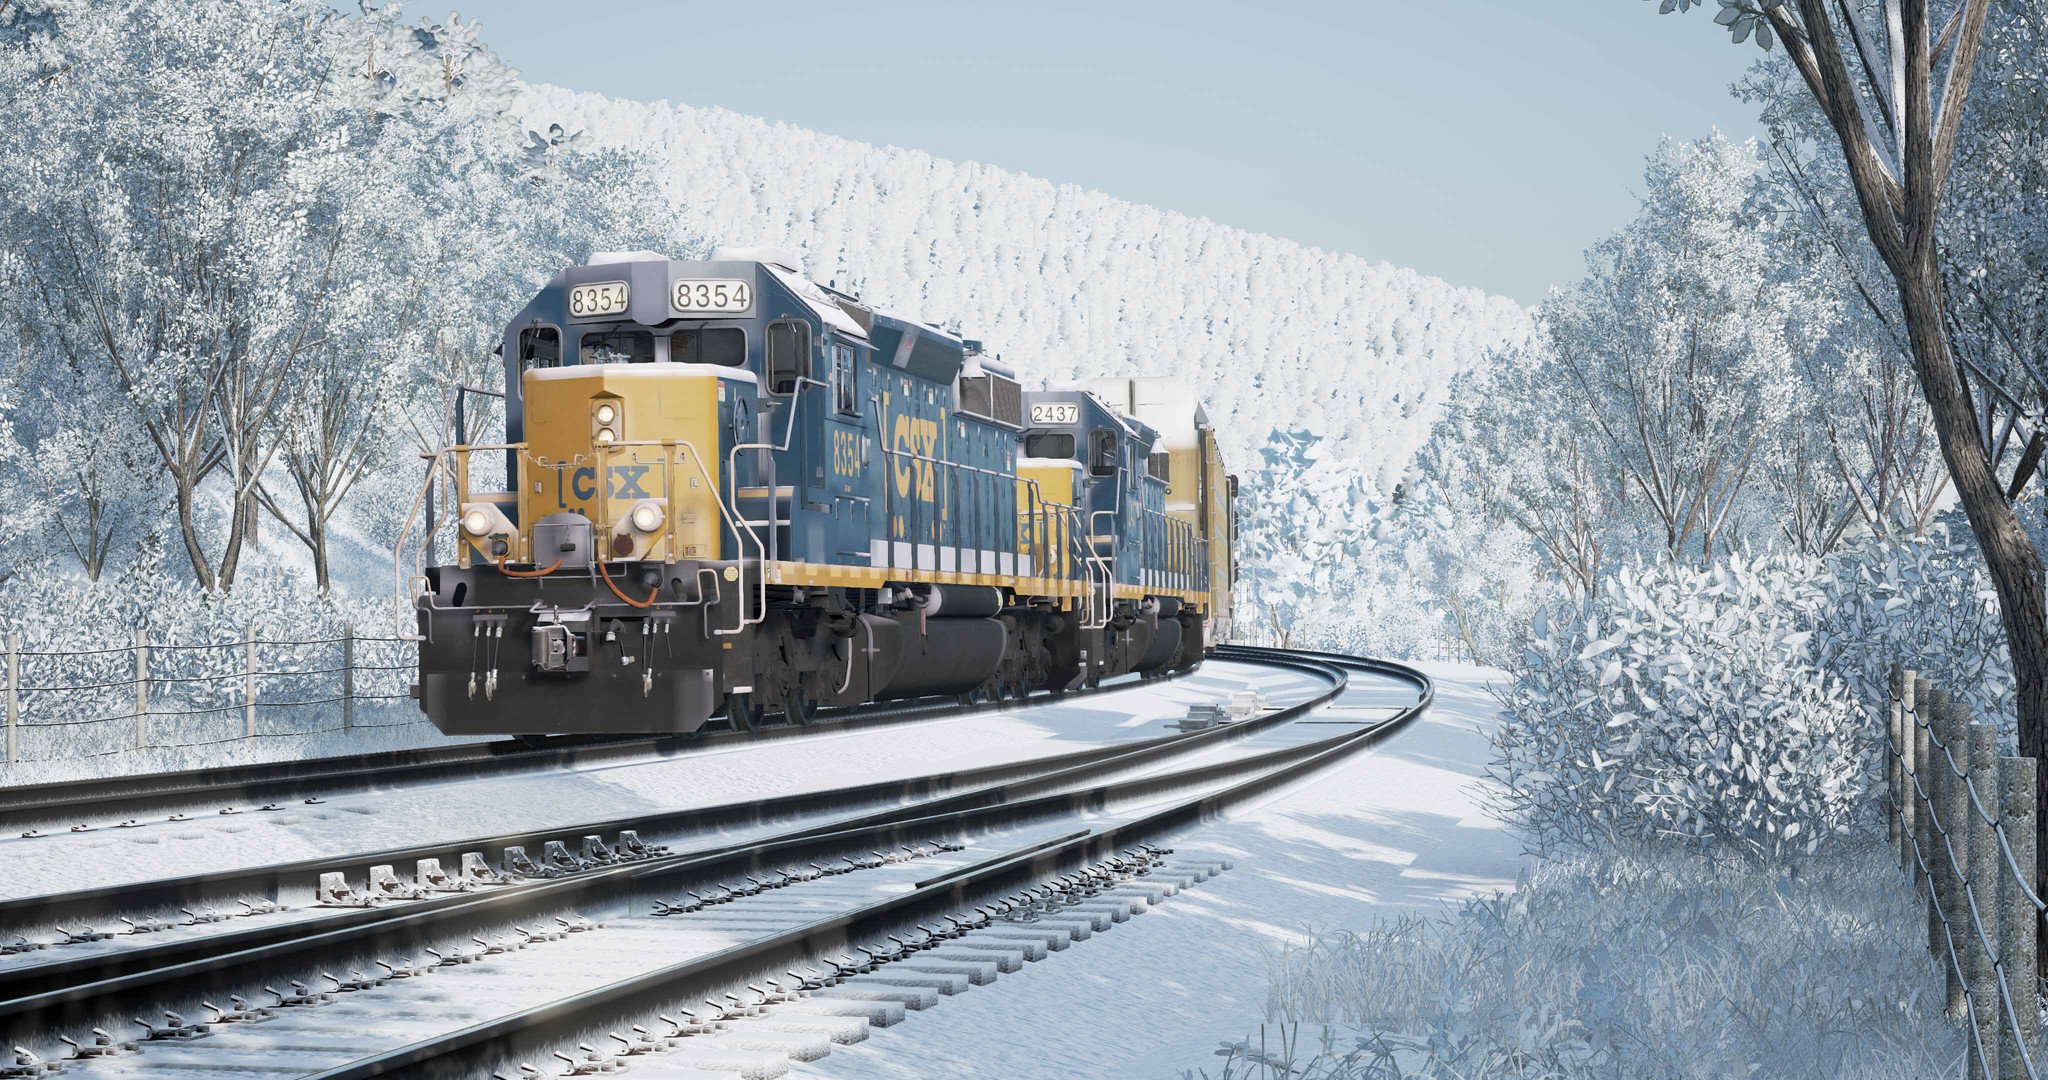 csx heavy haul train simulator demo